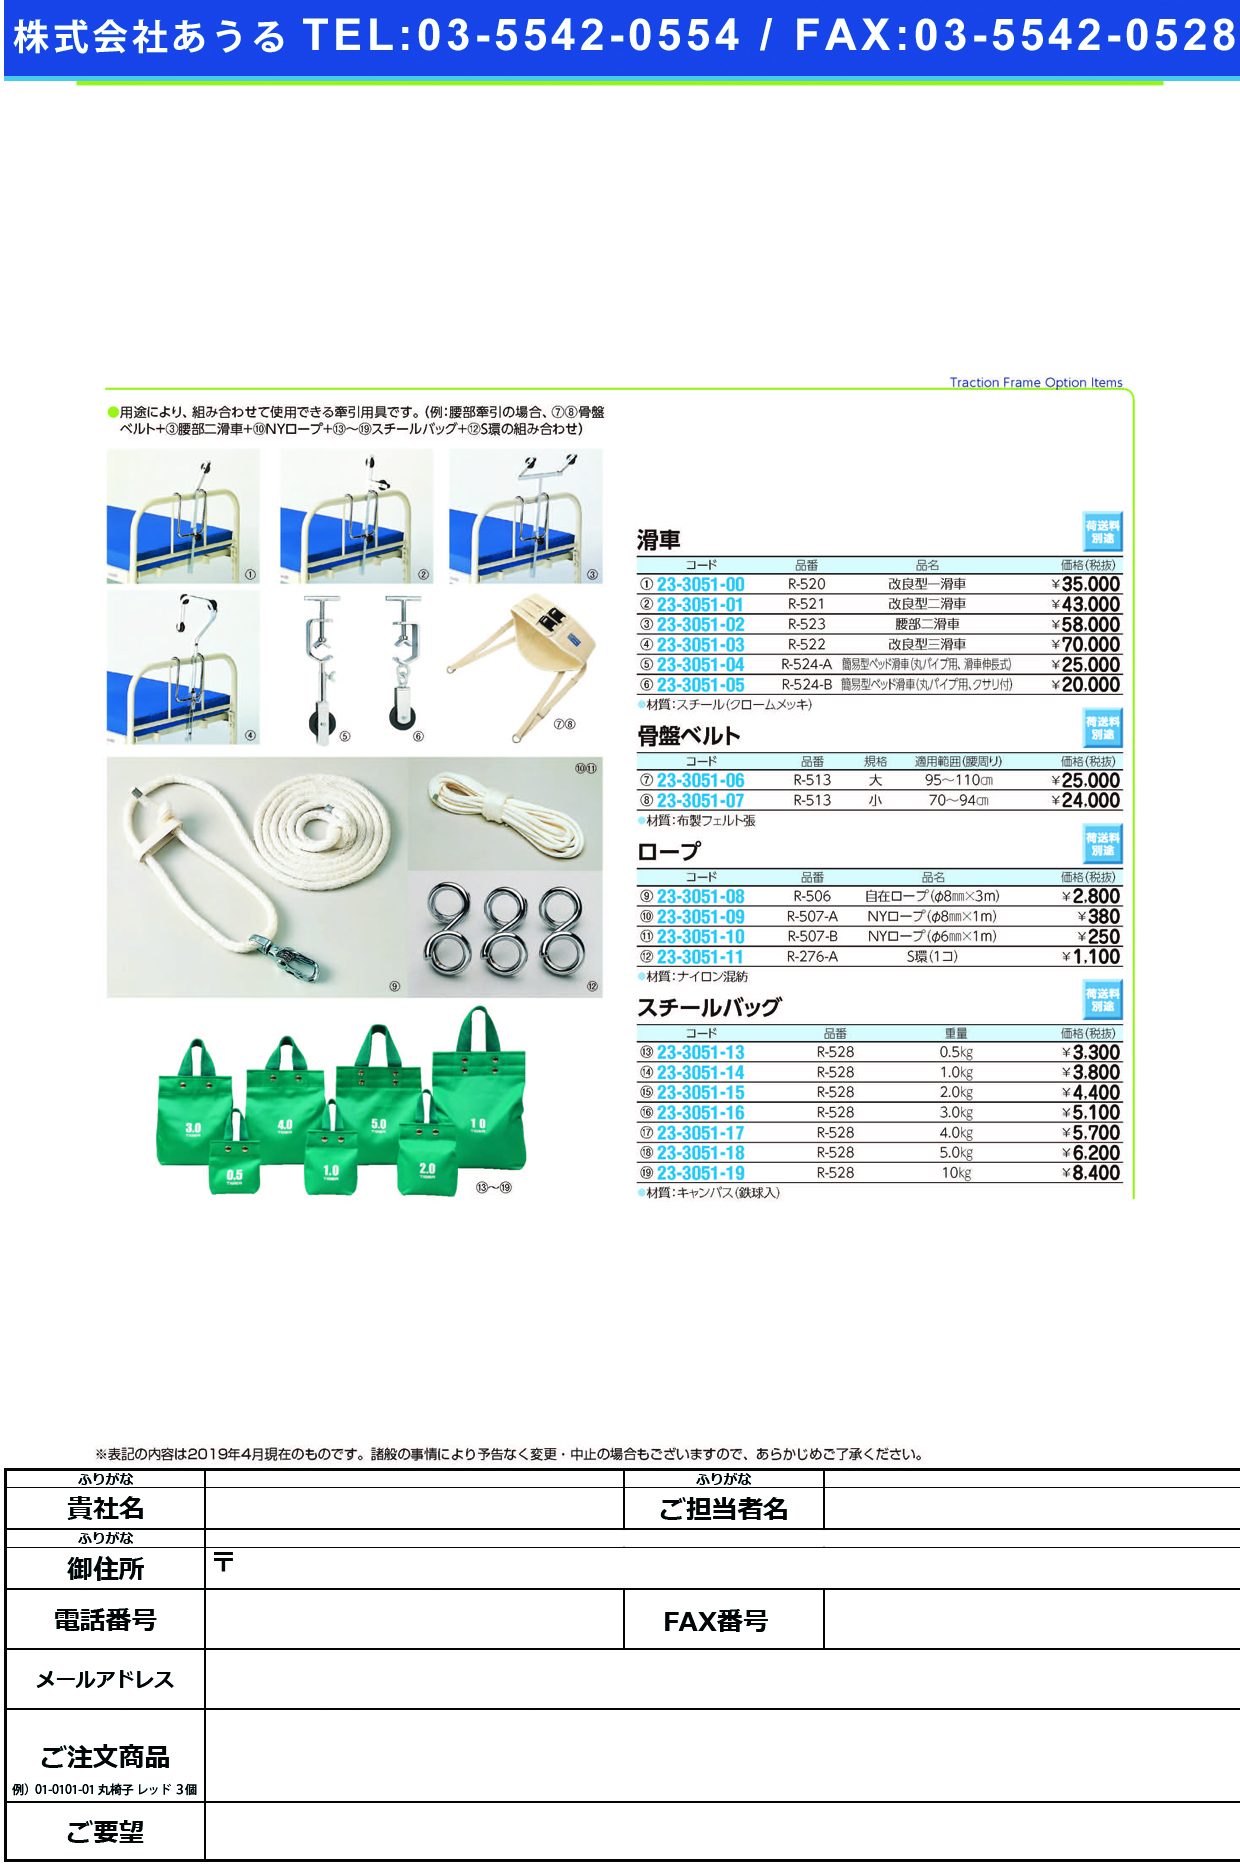 (23-3051-04)簡易型ベッド滑車 R-524-A ｶﾝｲｶﾞﾀﾍﾞｯﾄﾞｶｯｼｬ【1個単位】【2019年カタログ商品】